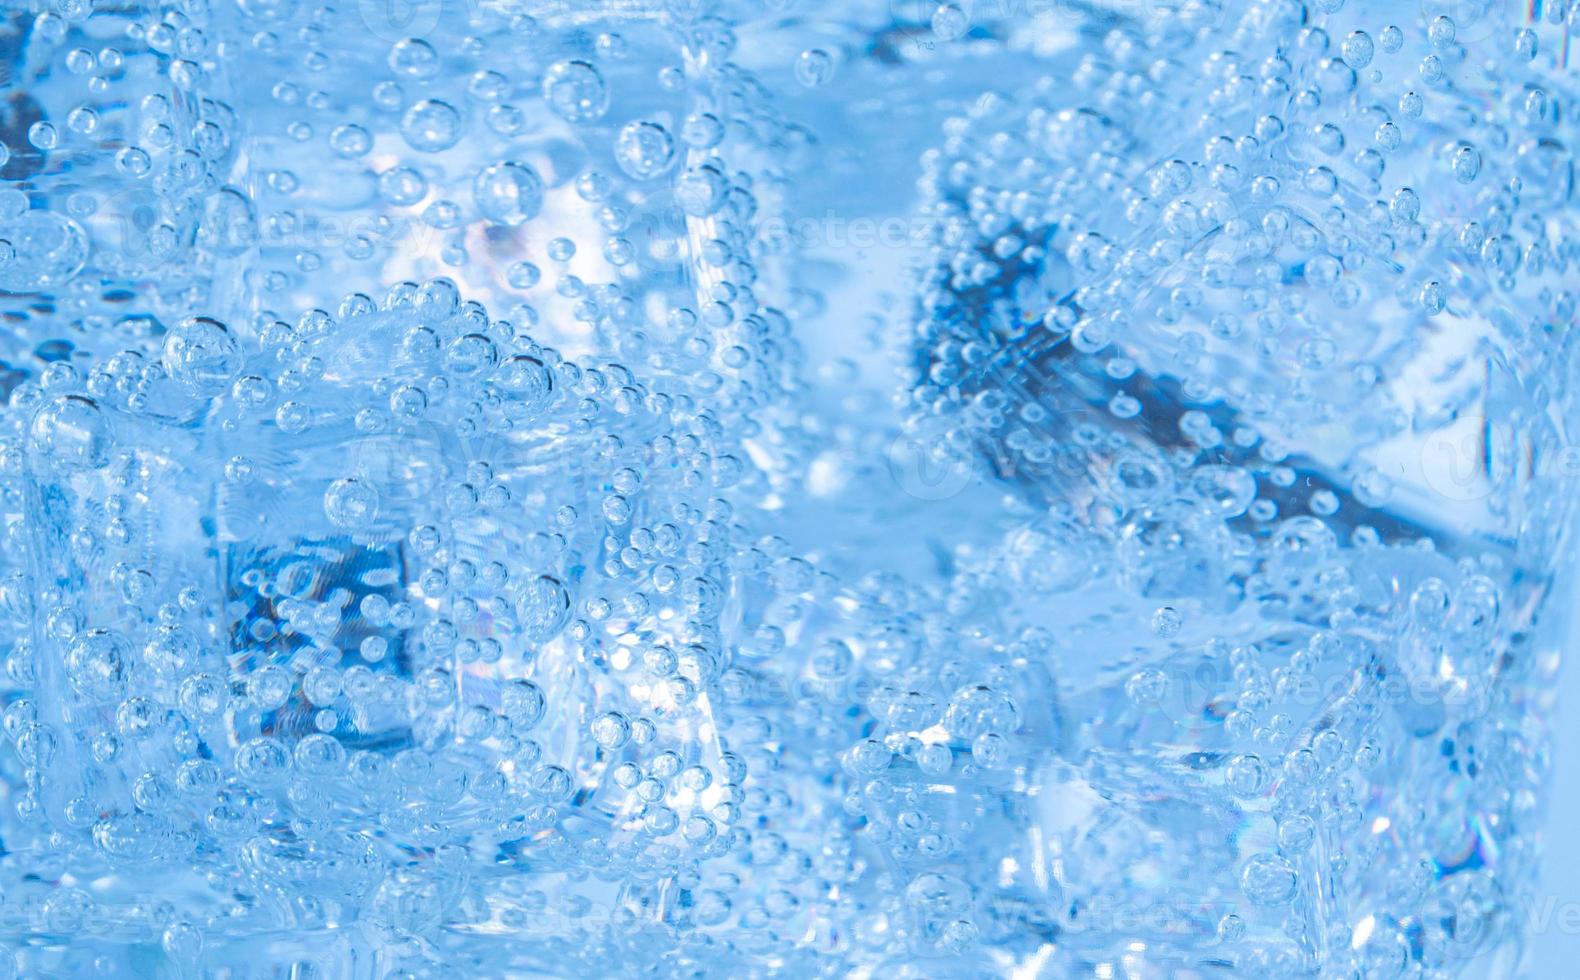 cubos de gelo com bolhas de ar giram no copo. soda e resfrie em um copo transparente. foto